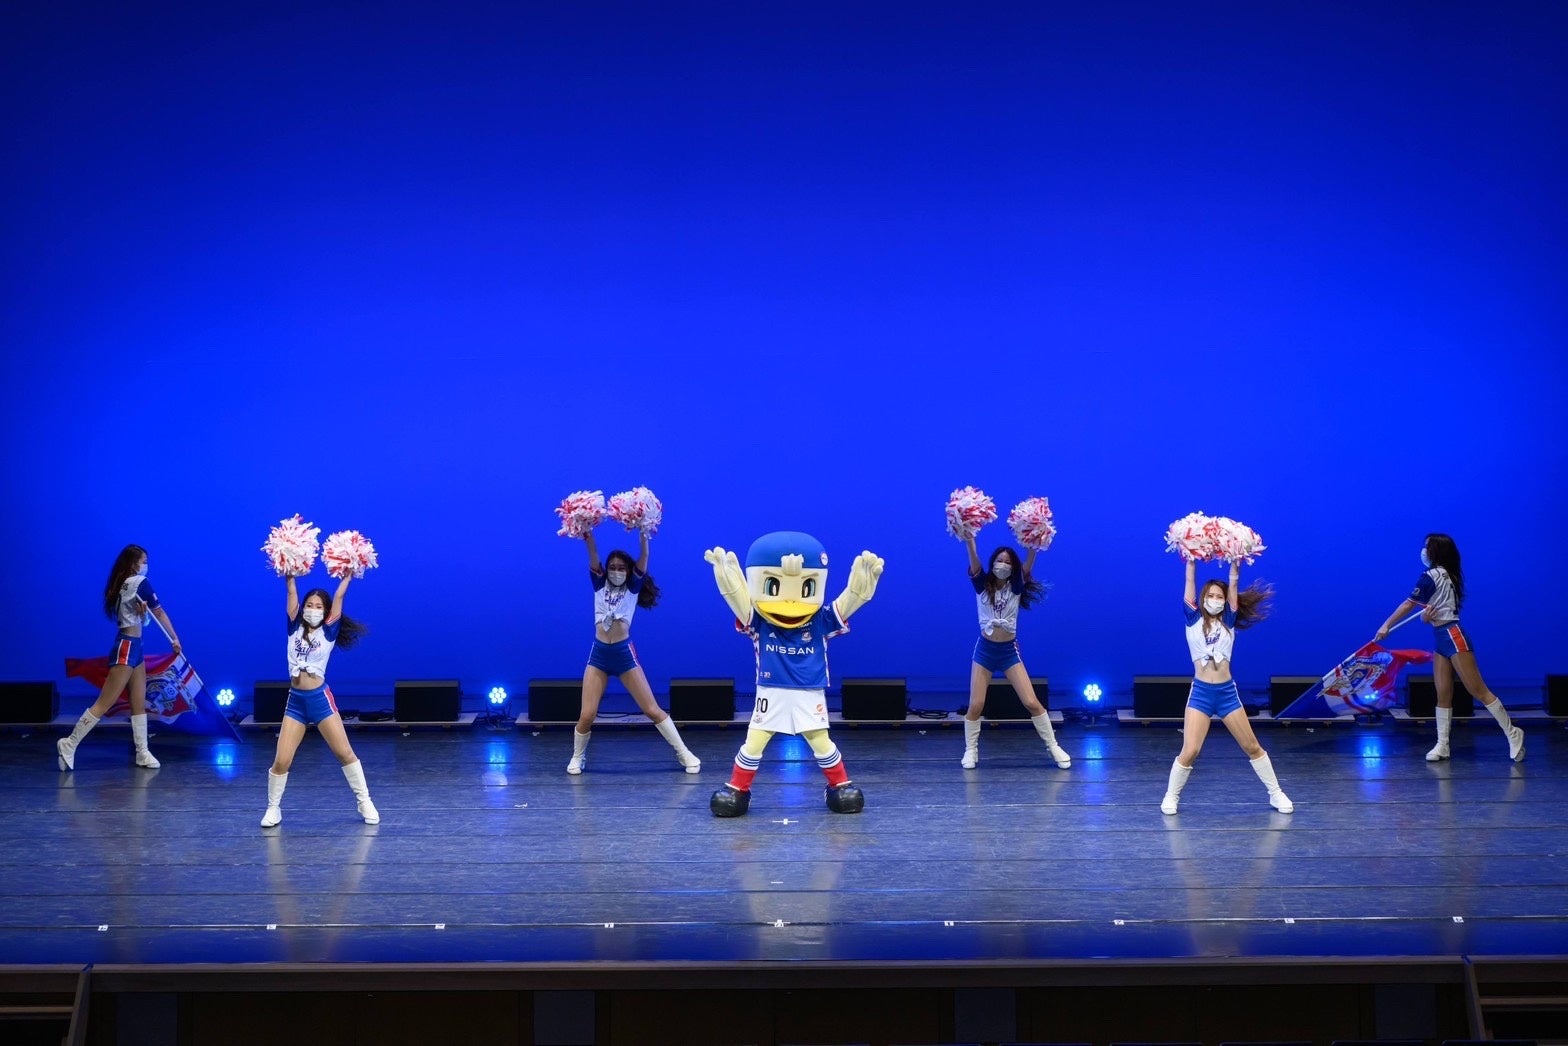 横浜F・マリノスオフィシャルチアリーダーズ Tricolore Mermaids Cheer Stage vol.11 -New Generation - 開催決定のサブ画像3